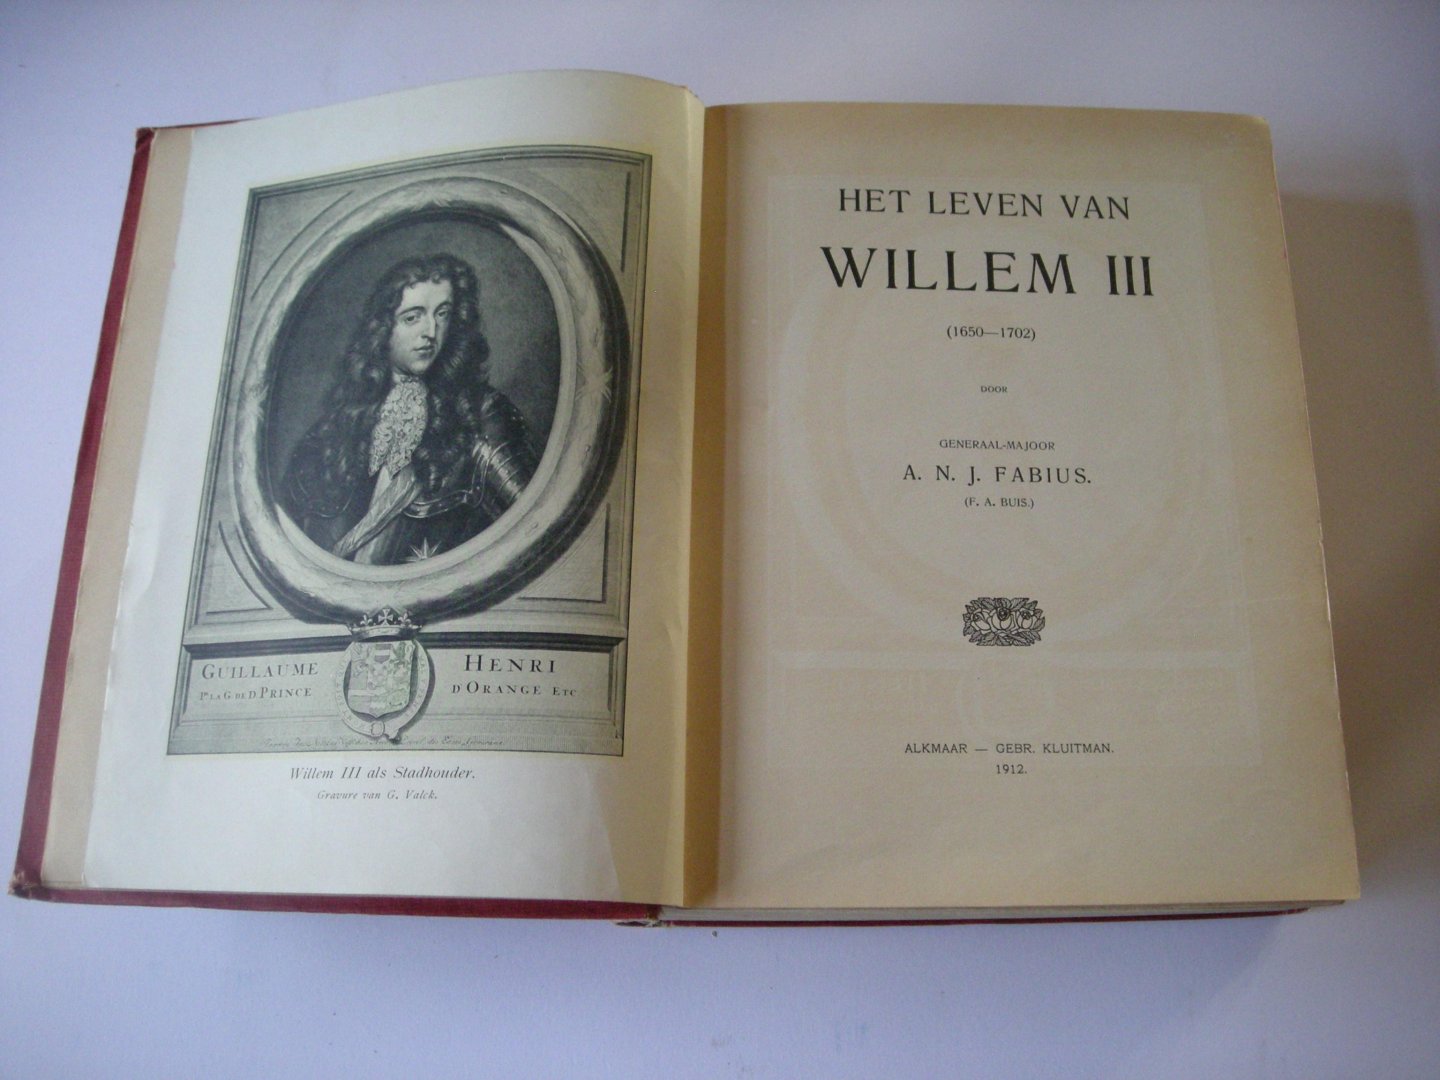 Fabius, A.N.J. (F.A.Buis) - Het leven van Willem III (1650-1702)